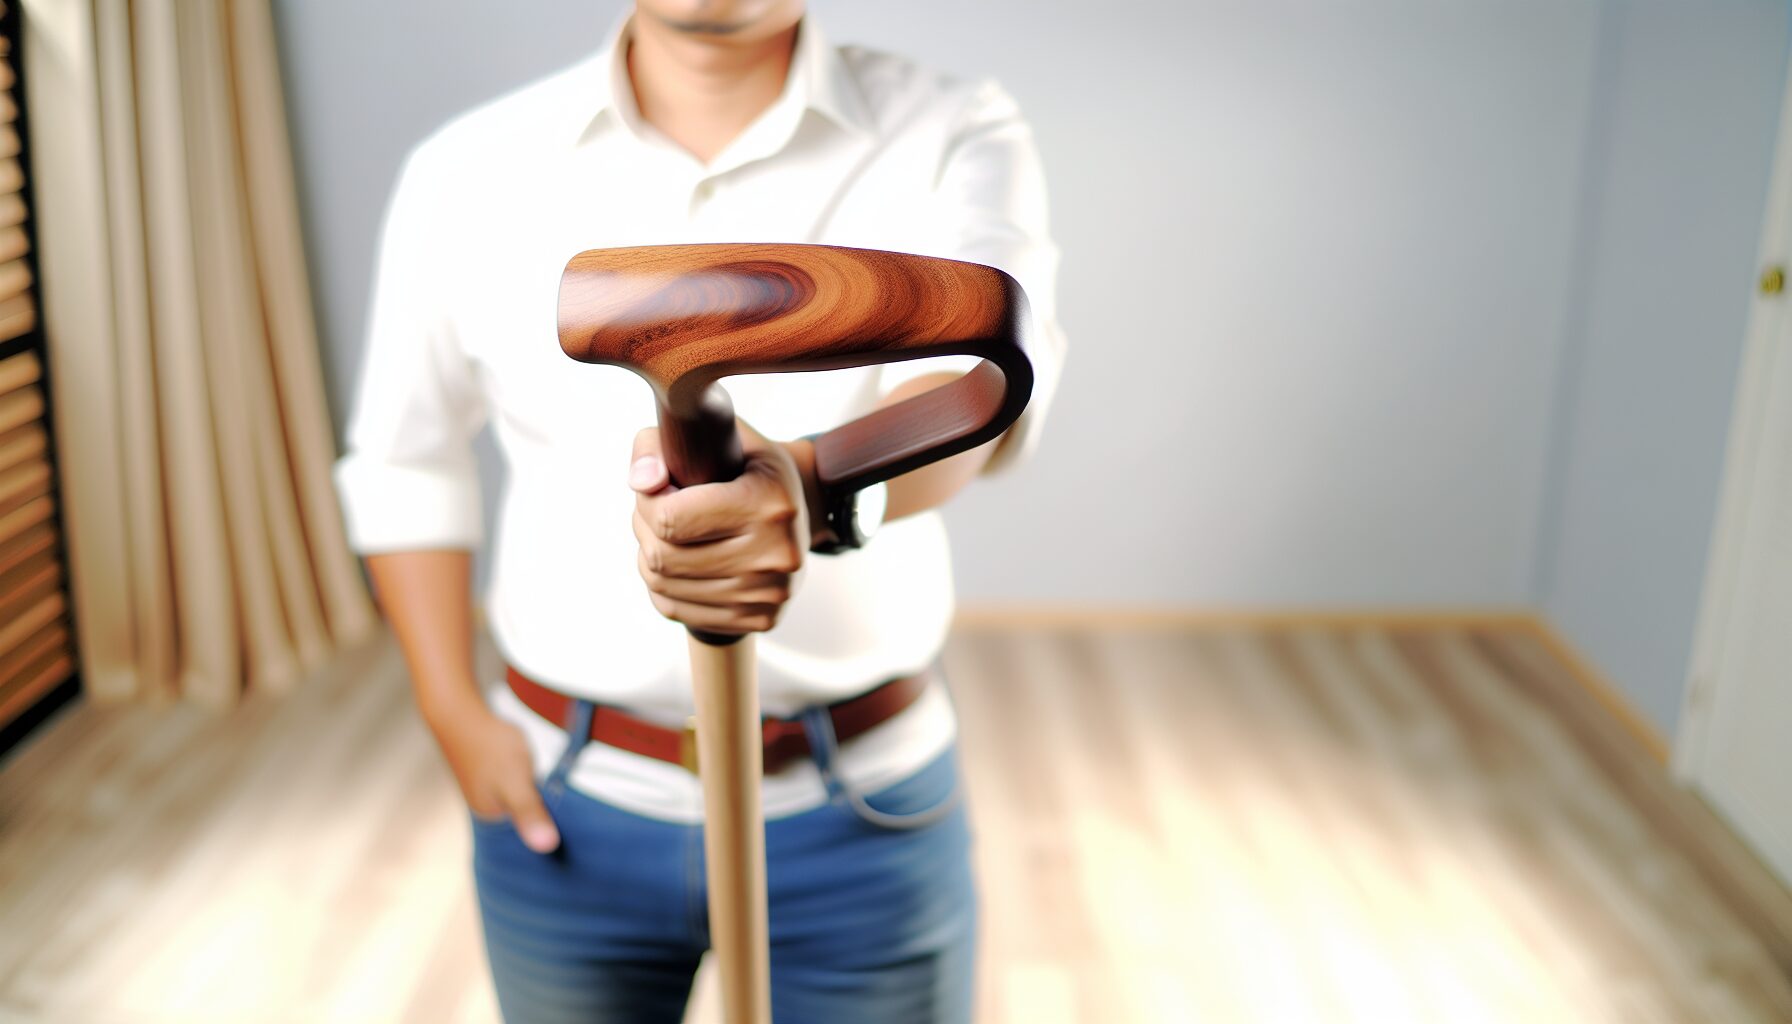 Shovel with Wood Handle